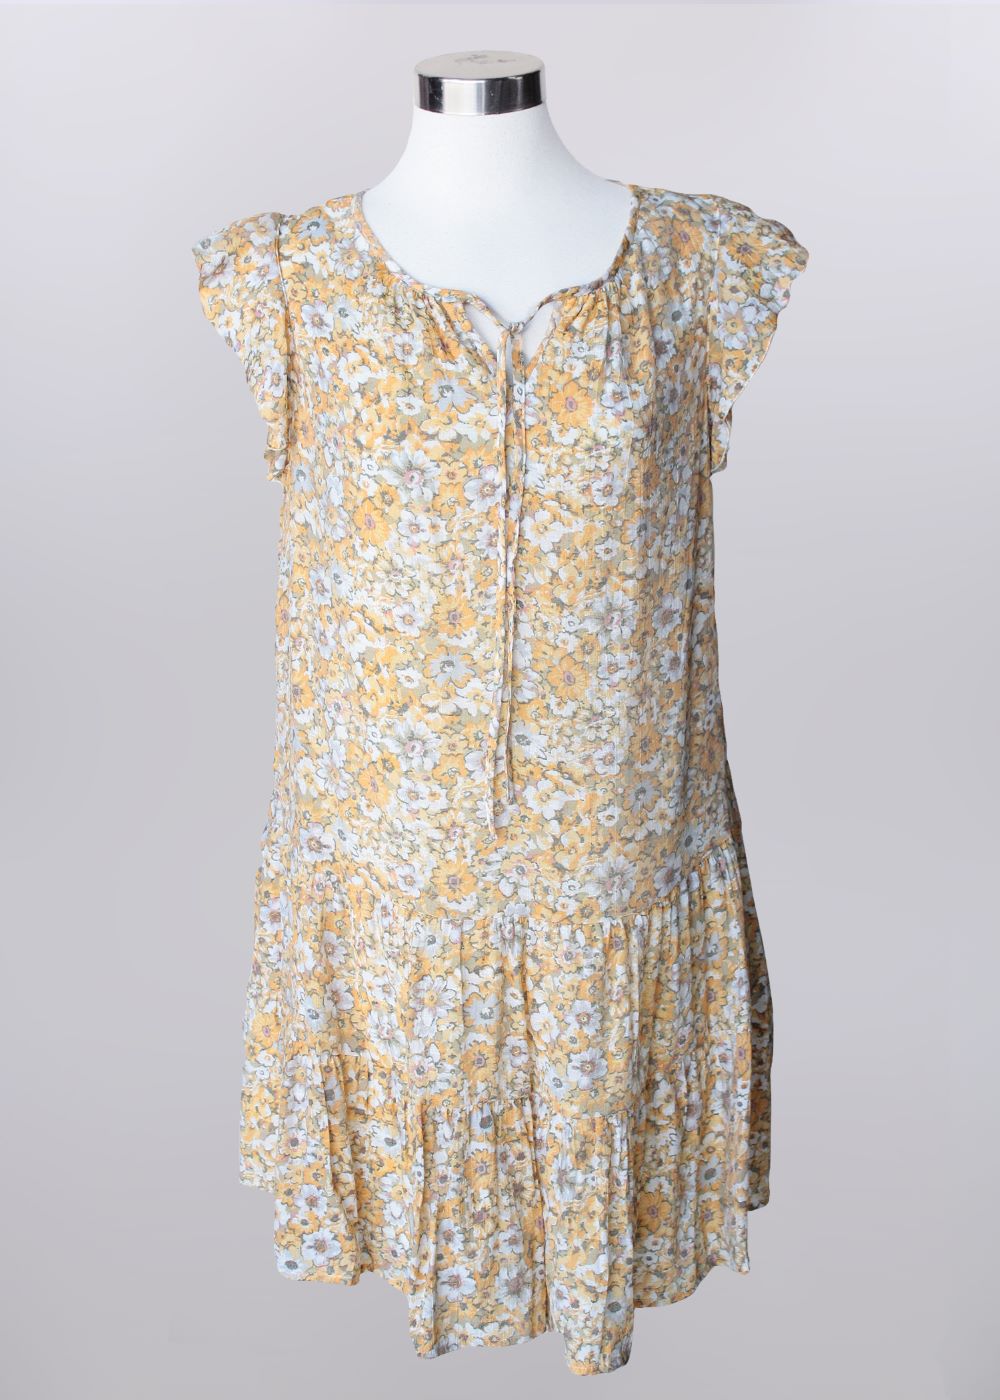 'Keren Hart' Women's Lined Ruffle Dress - Yellow